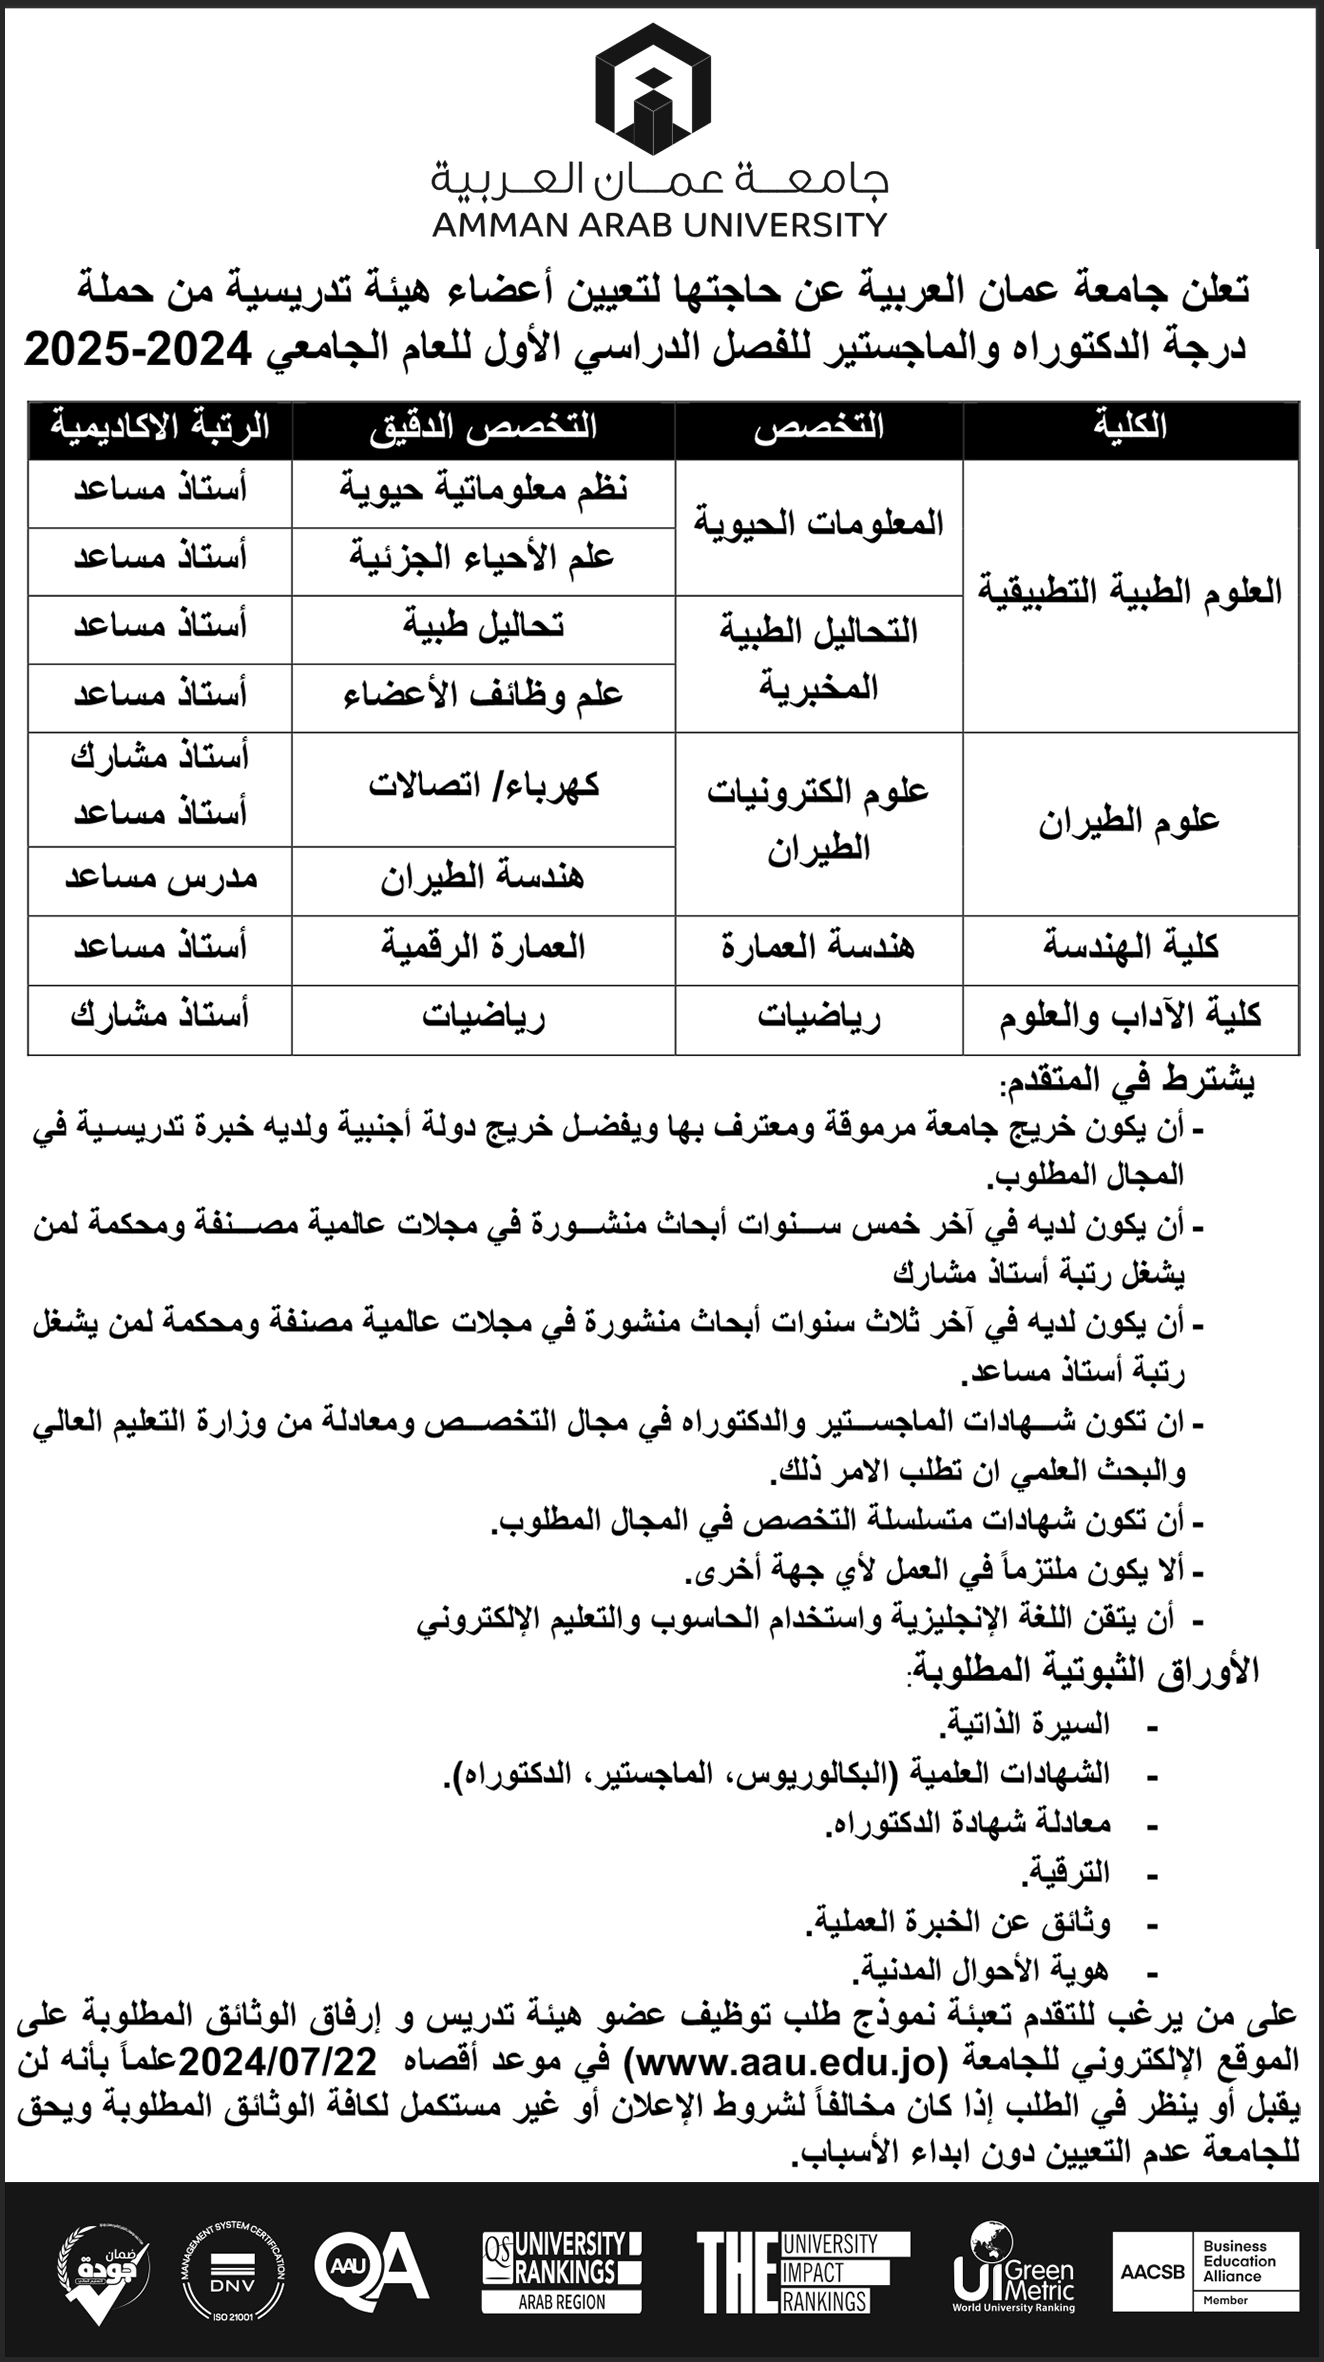 تعلن جامعة عمان العربية عن حاجتها لتعيين أعضاء هيئة تدريسية من حملة درجة الدكتوراه والماجستير للفصل الدراسي الثاني للعام الجامعي 2024-2025